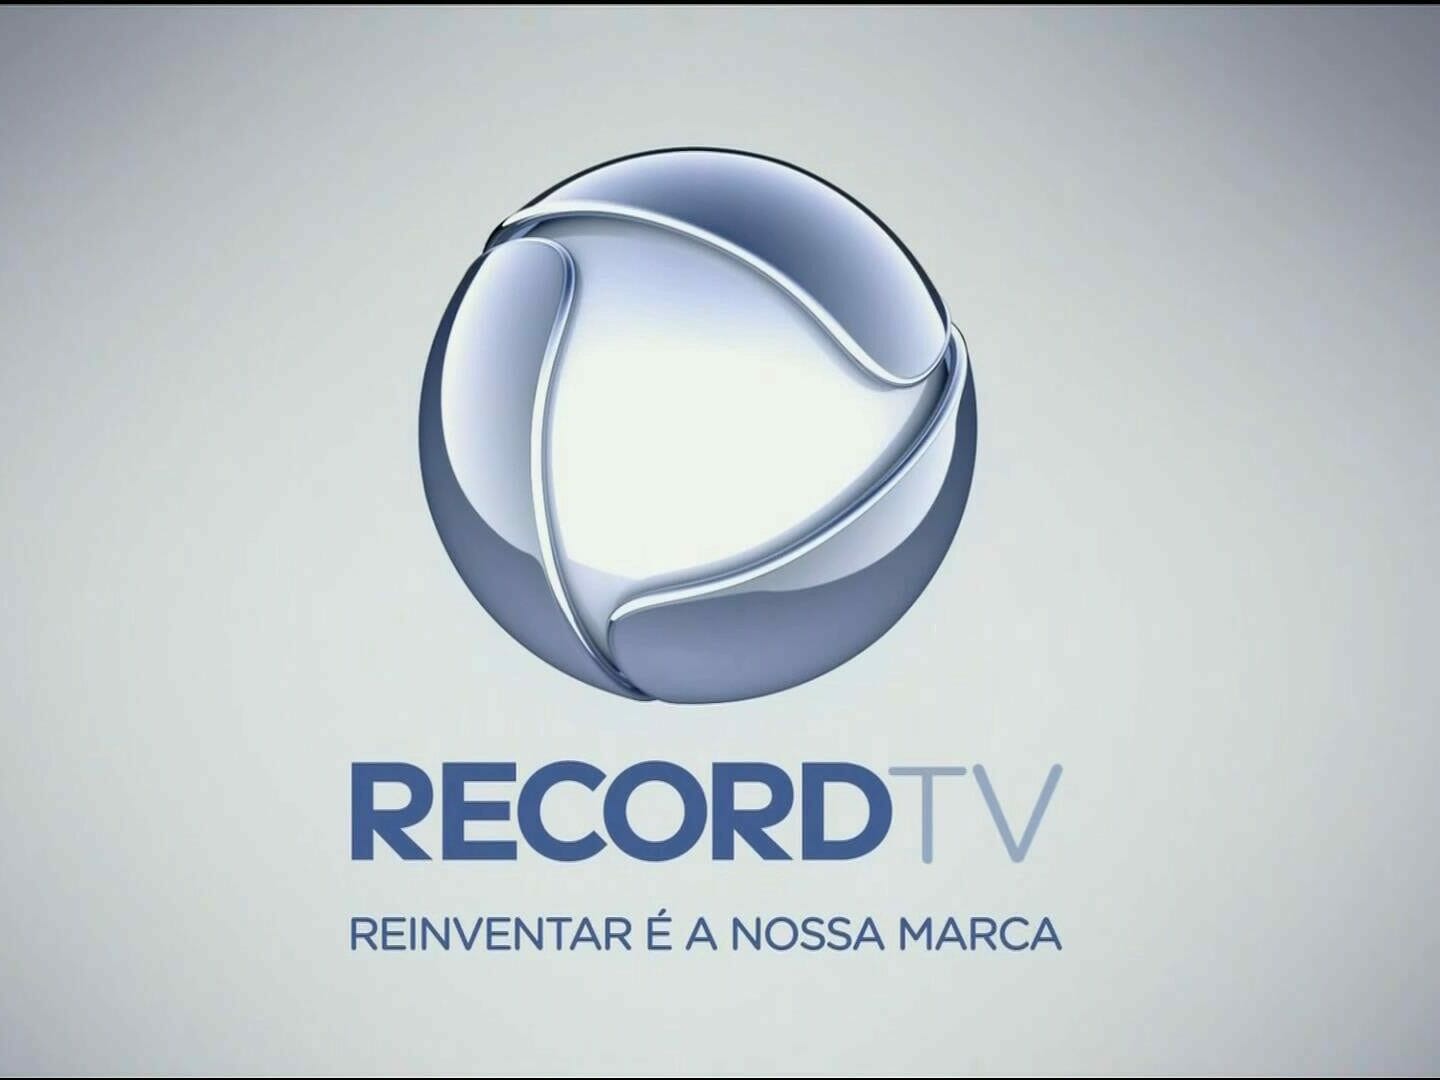 Record TV